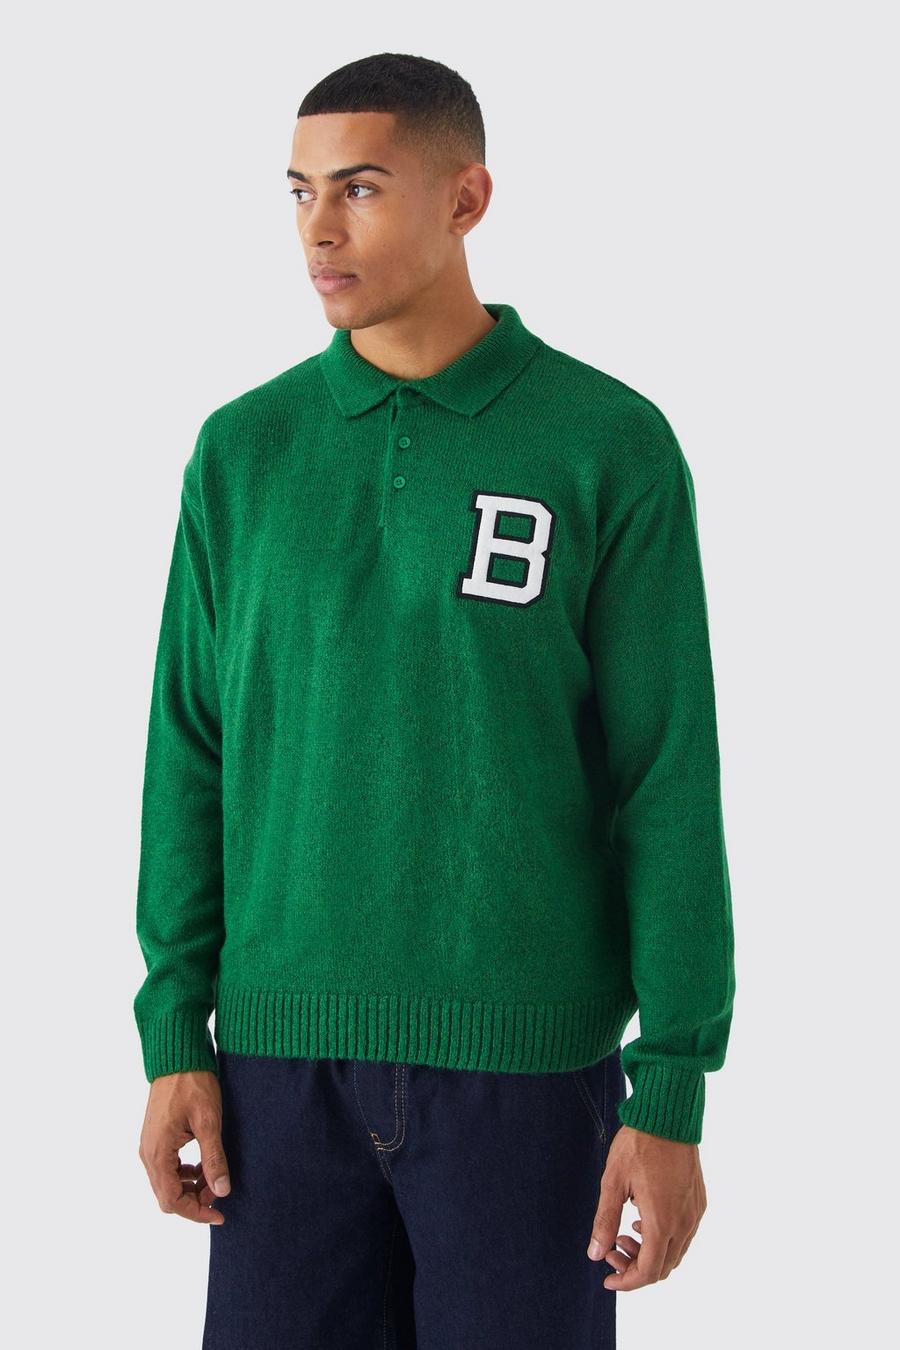 Polo squadrata stile college in maglia con stemma B, Green